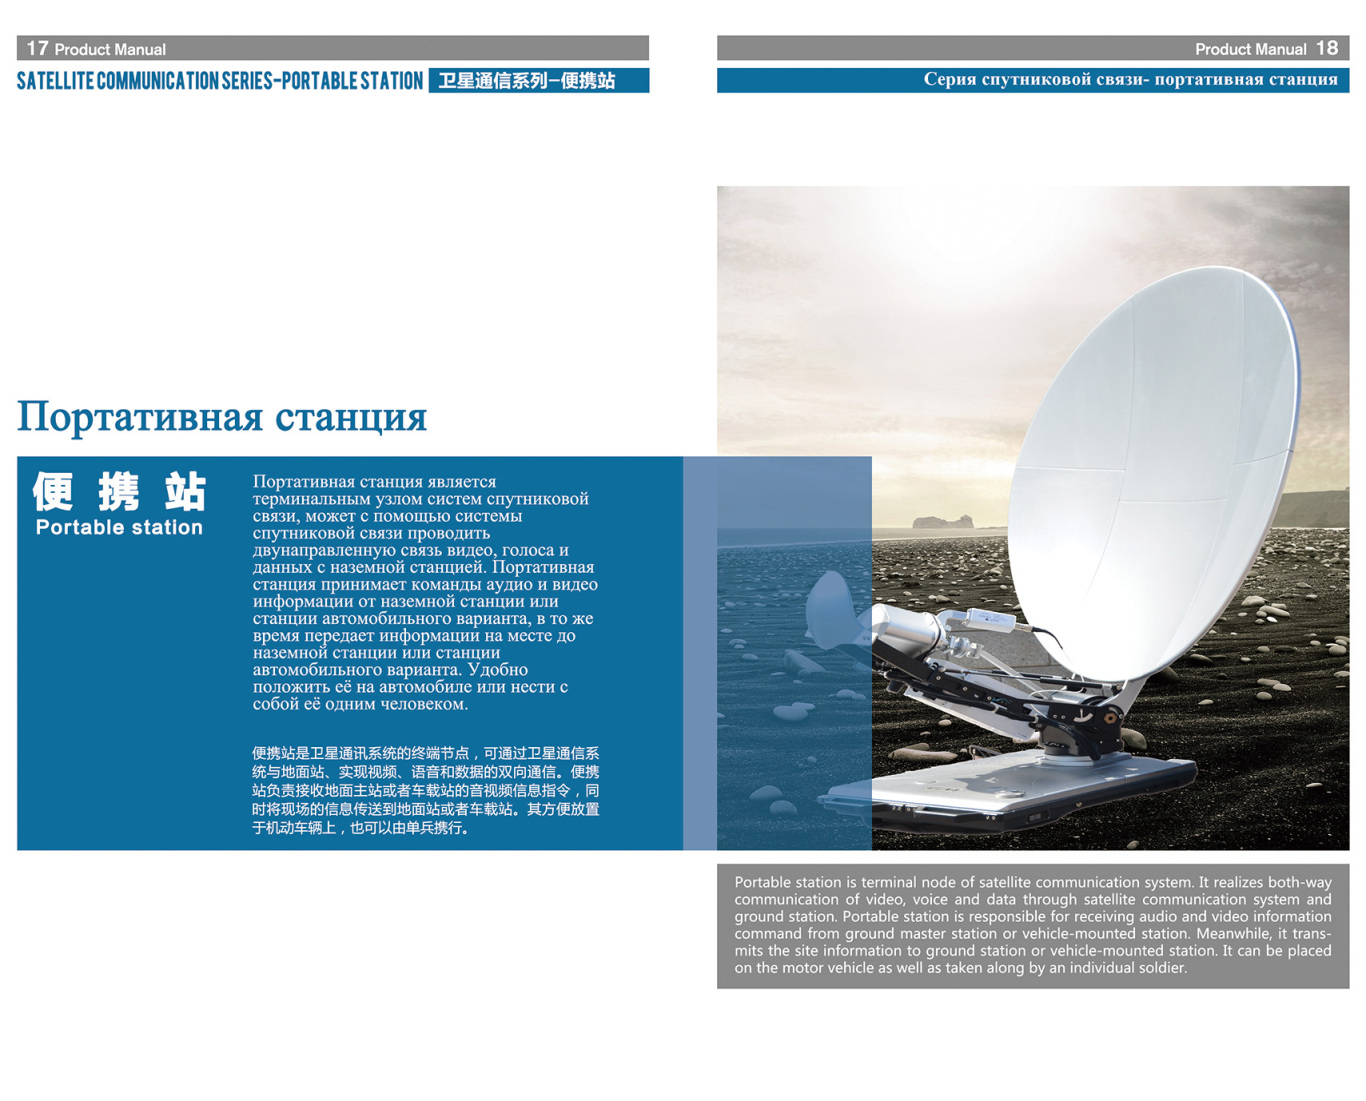 天宇北斗卫星科技公司产品手册画册图10